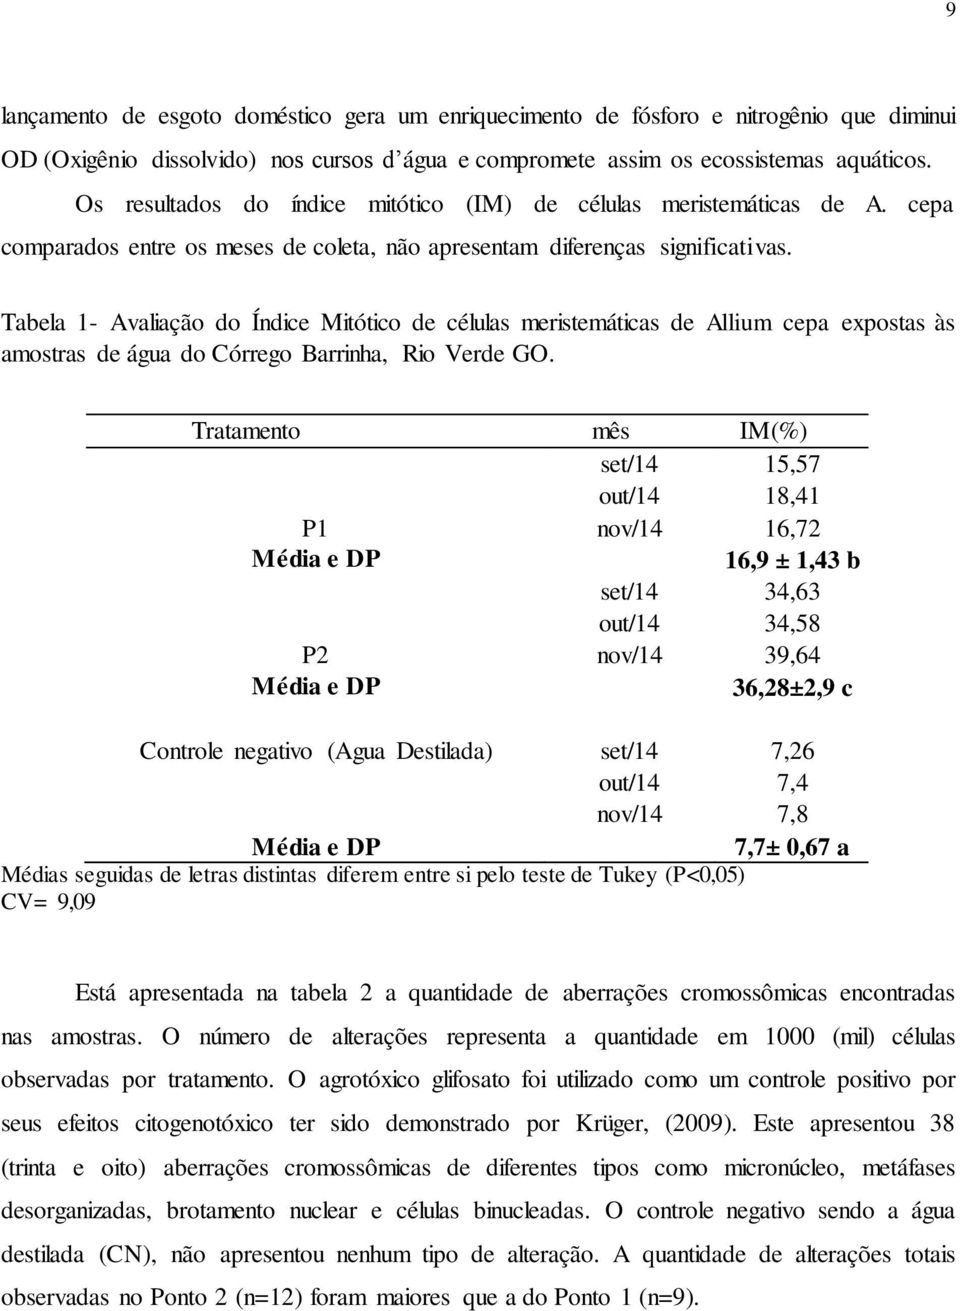 Tabela 1- Avaliação do Índice Mitótico de células meristemáticas de Allium cepa expostas às amostras de água do Córrego Barrinha, Rio Verde GO.